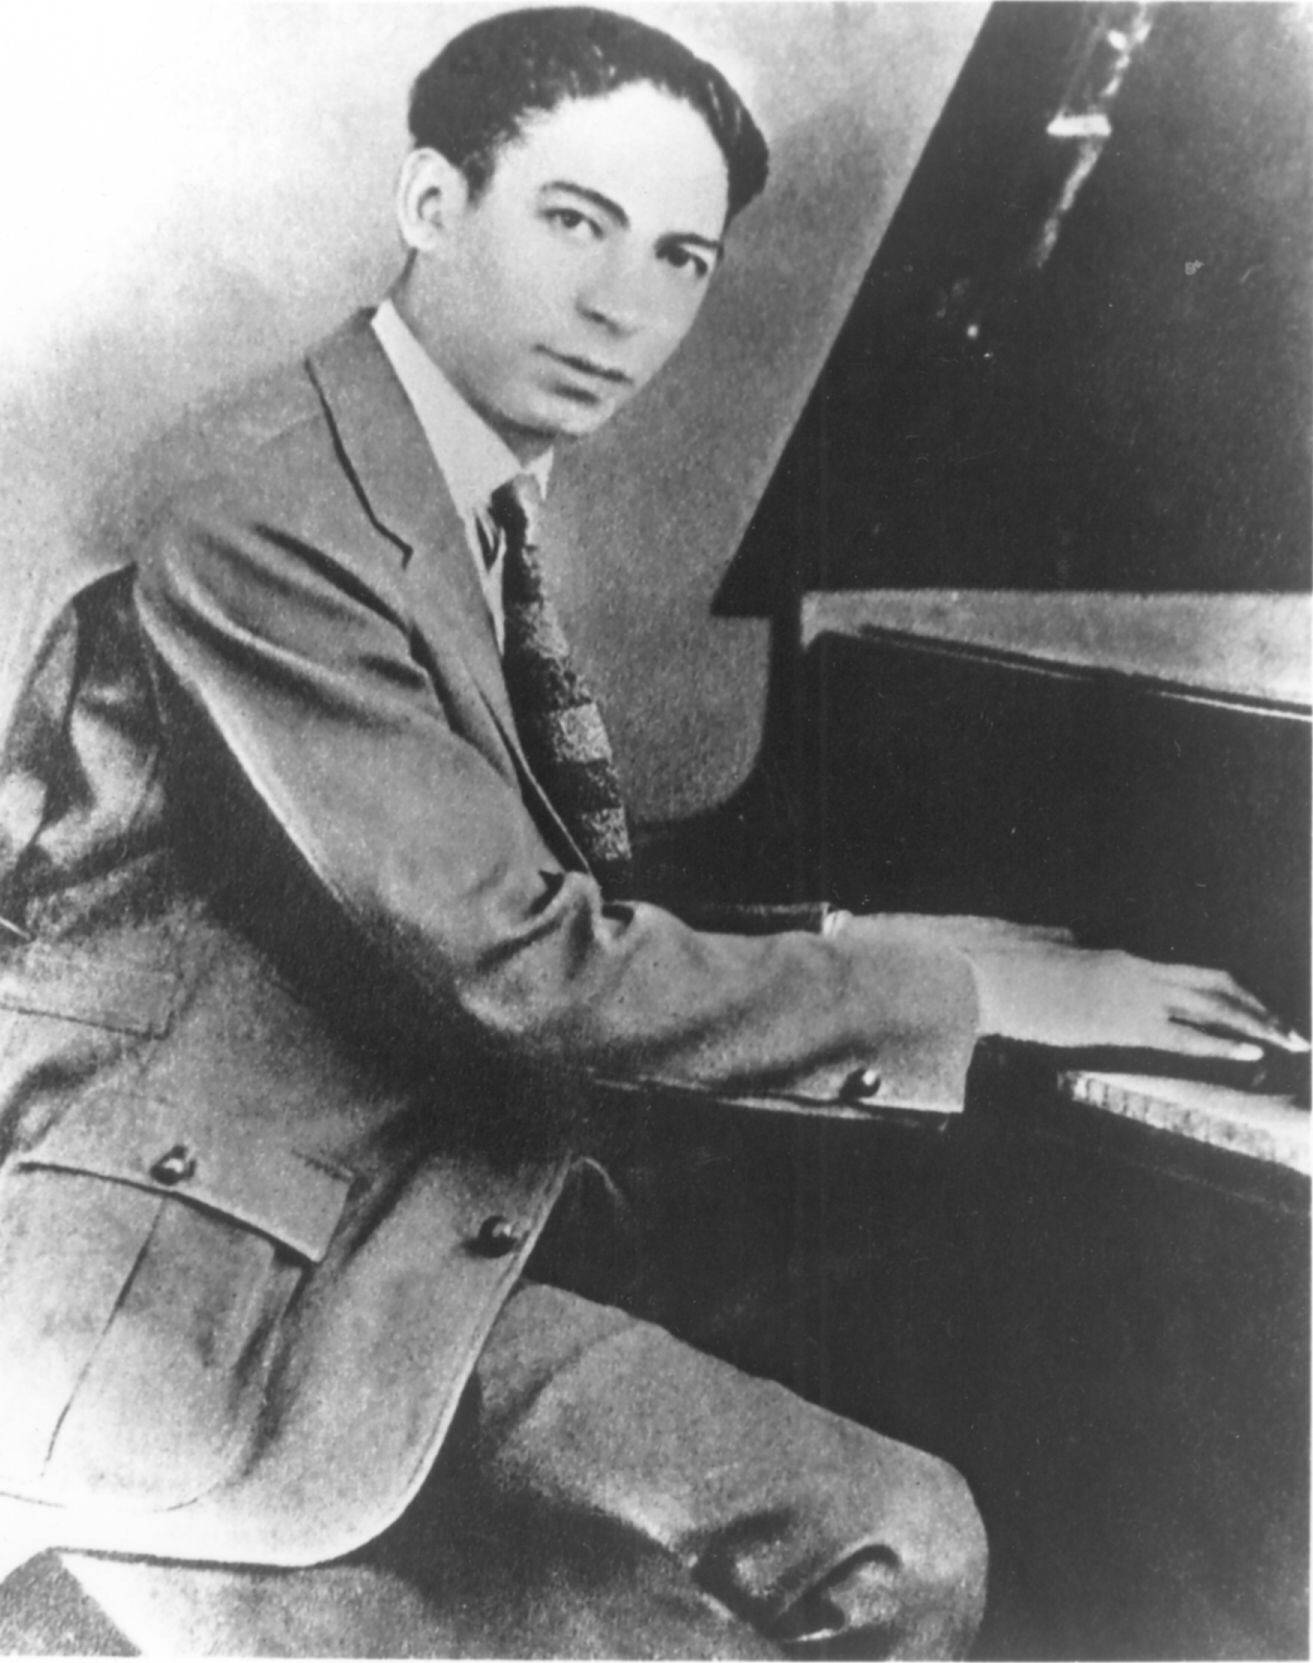 Ikonisk Jelly Roll Morton portræt fanger melodien af jazzens fødsel. Wallpaper